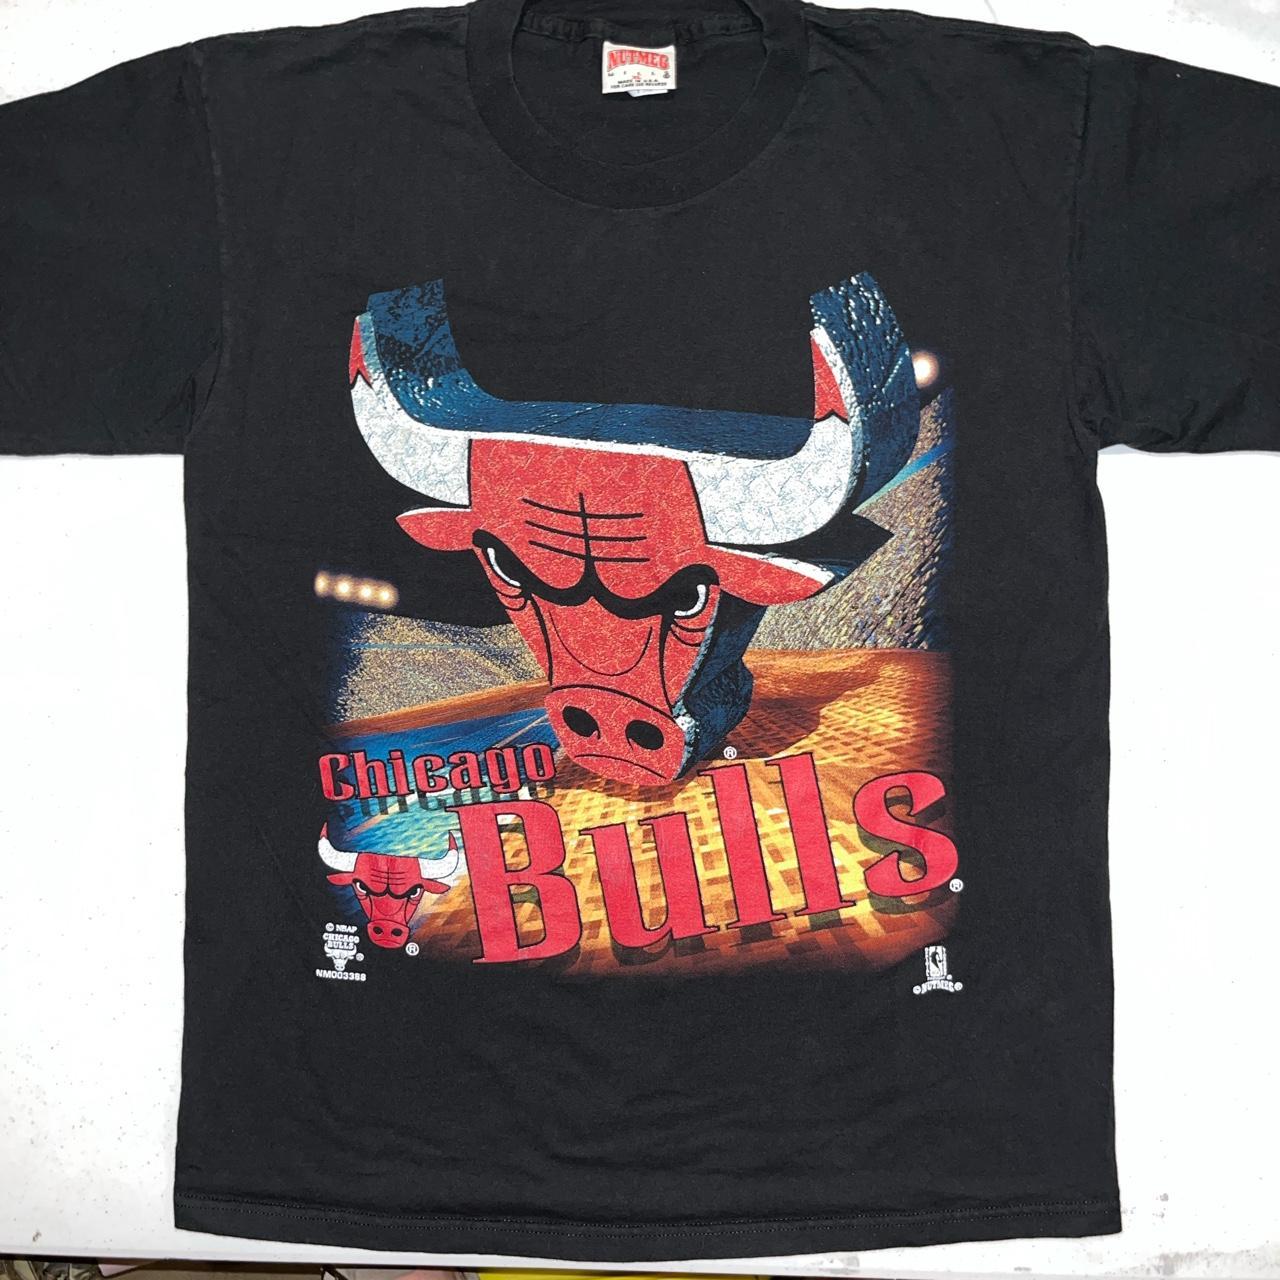 Vintage t shirt. Vintage Chicago Bulls t shirt. - Depop